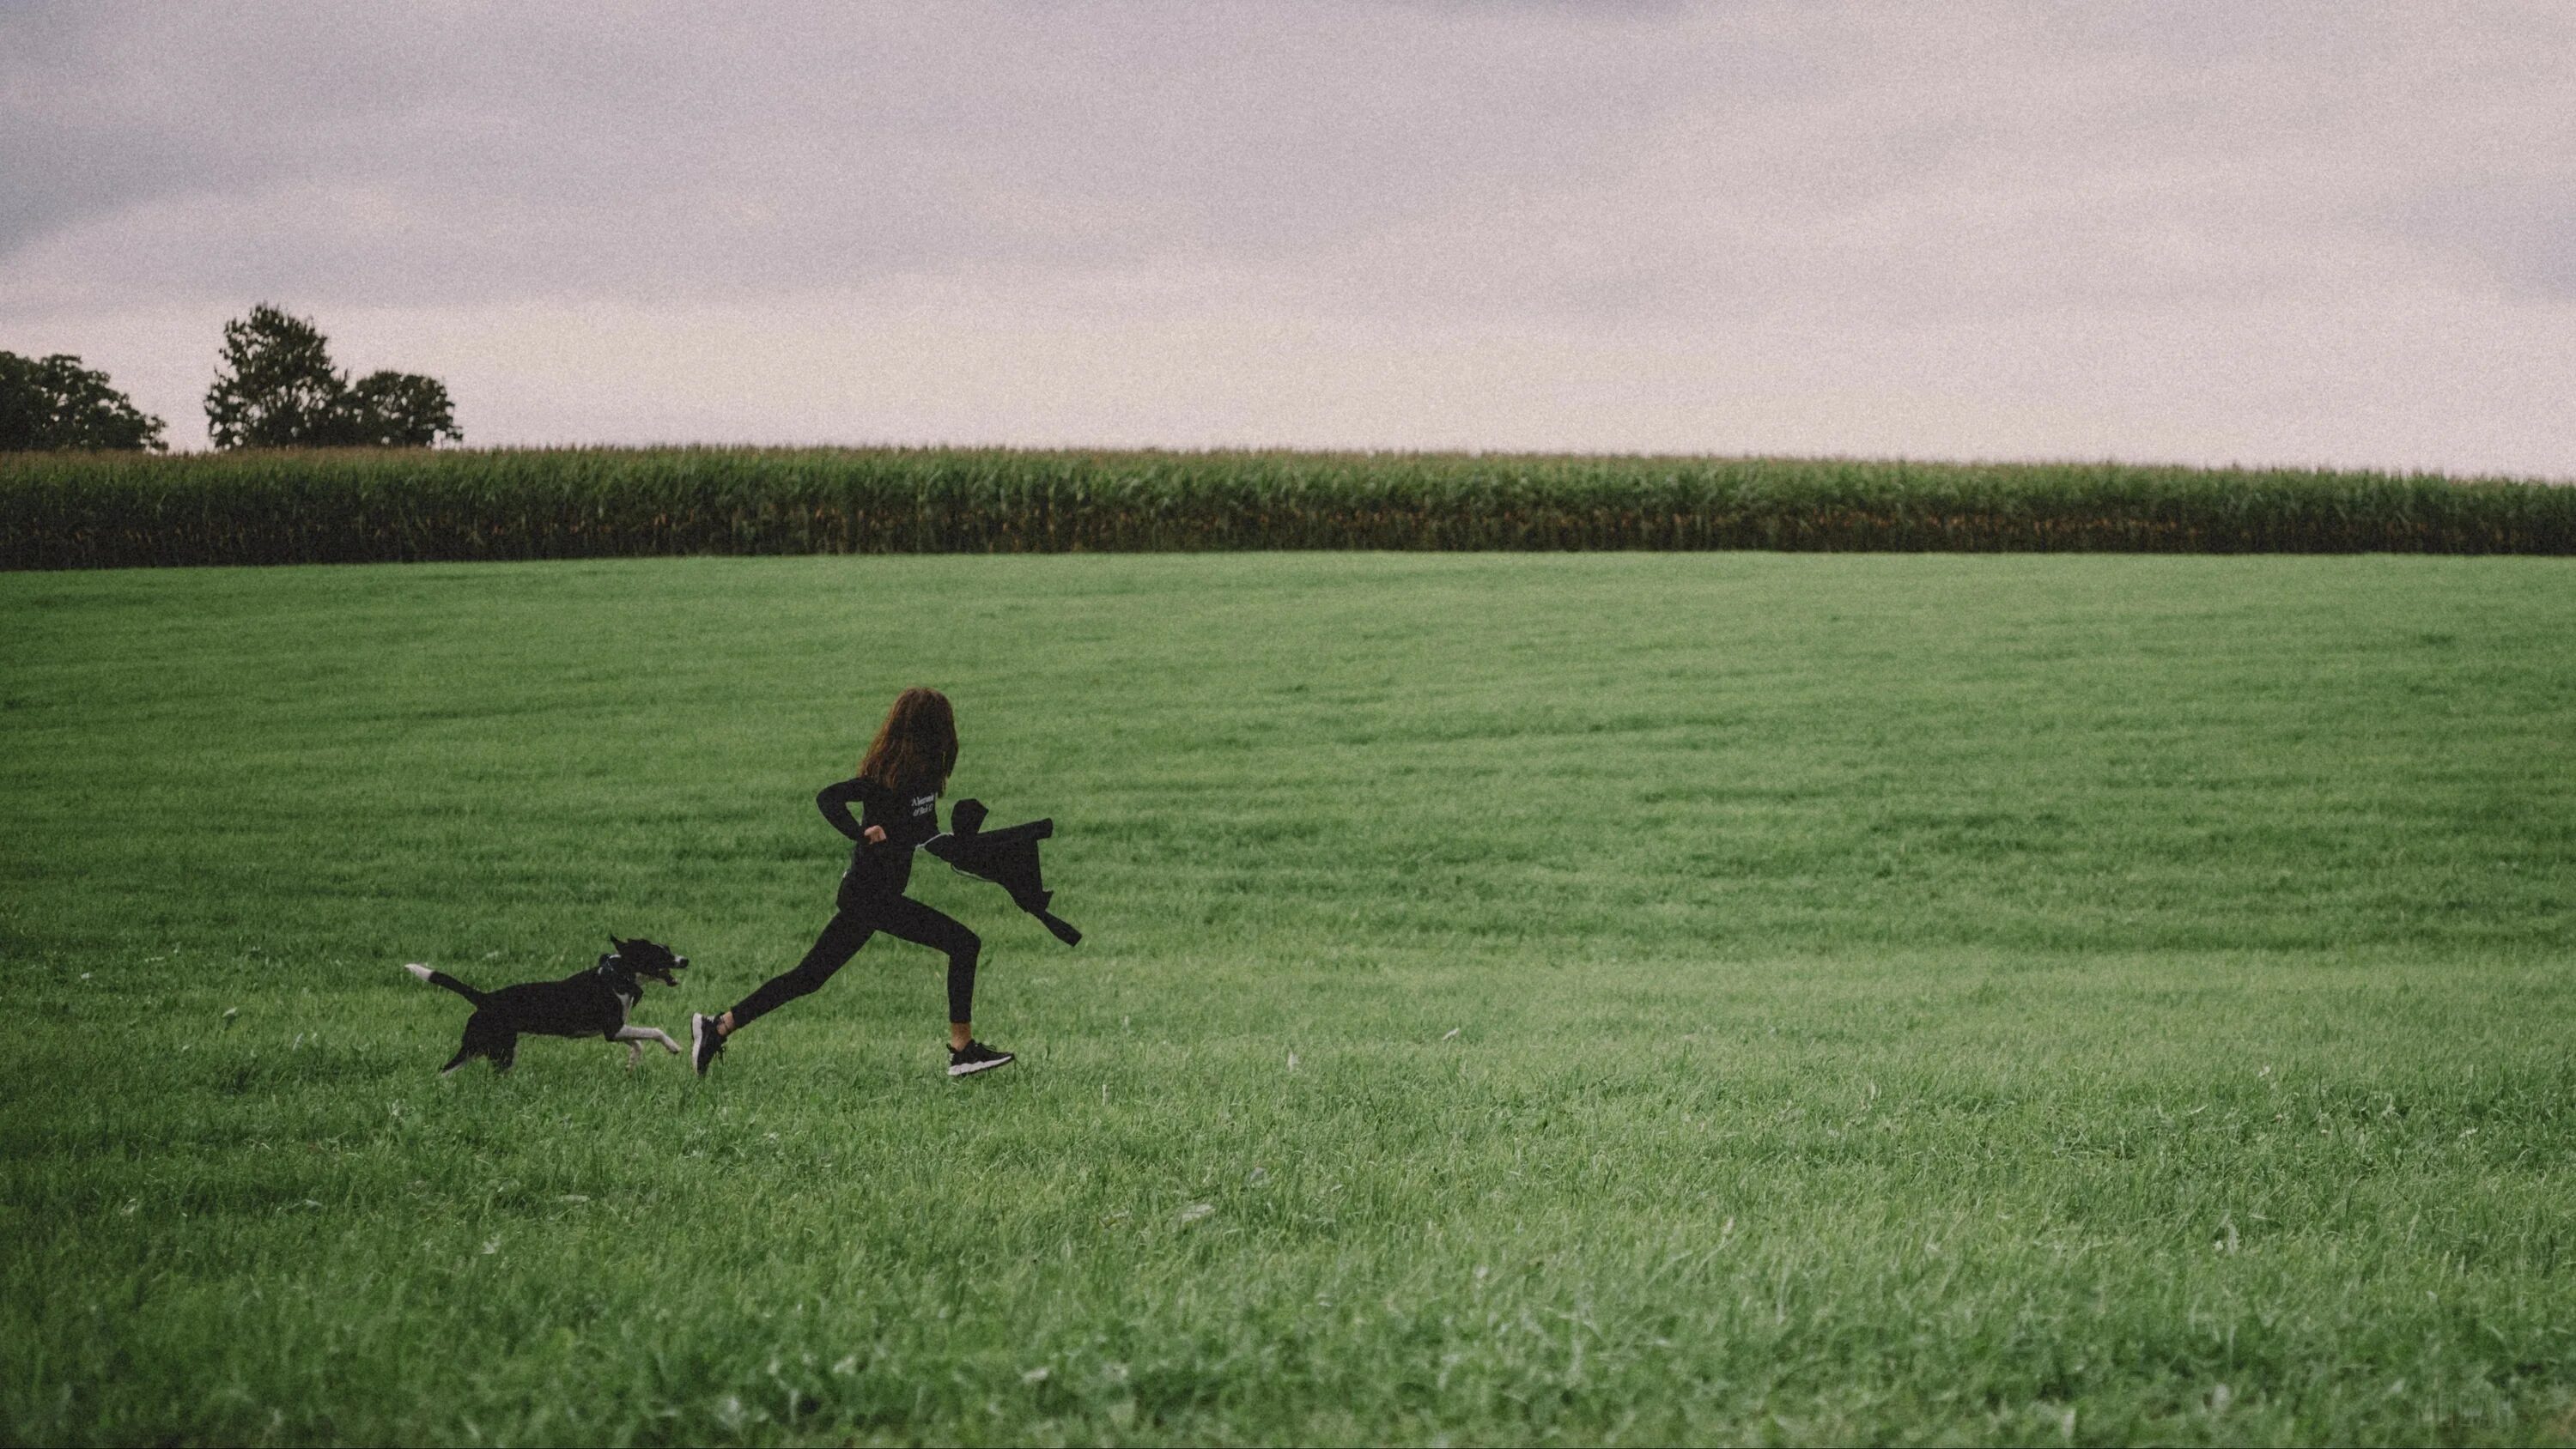 Фотосессия в поле с соба. Собака бежит в поле. Человек и собака в поле. Девушка с собакой в поле.